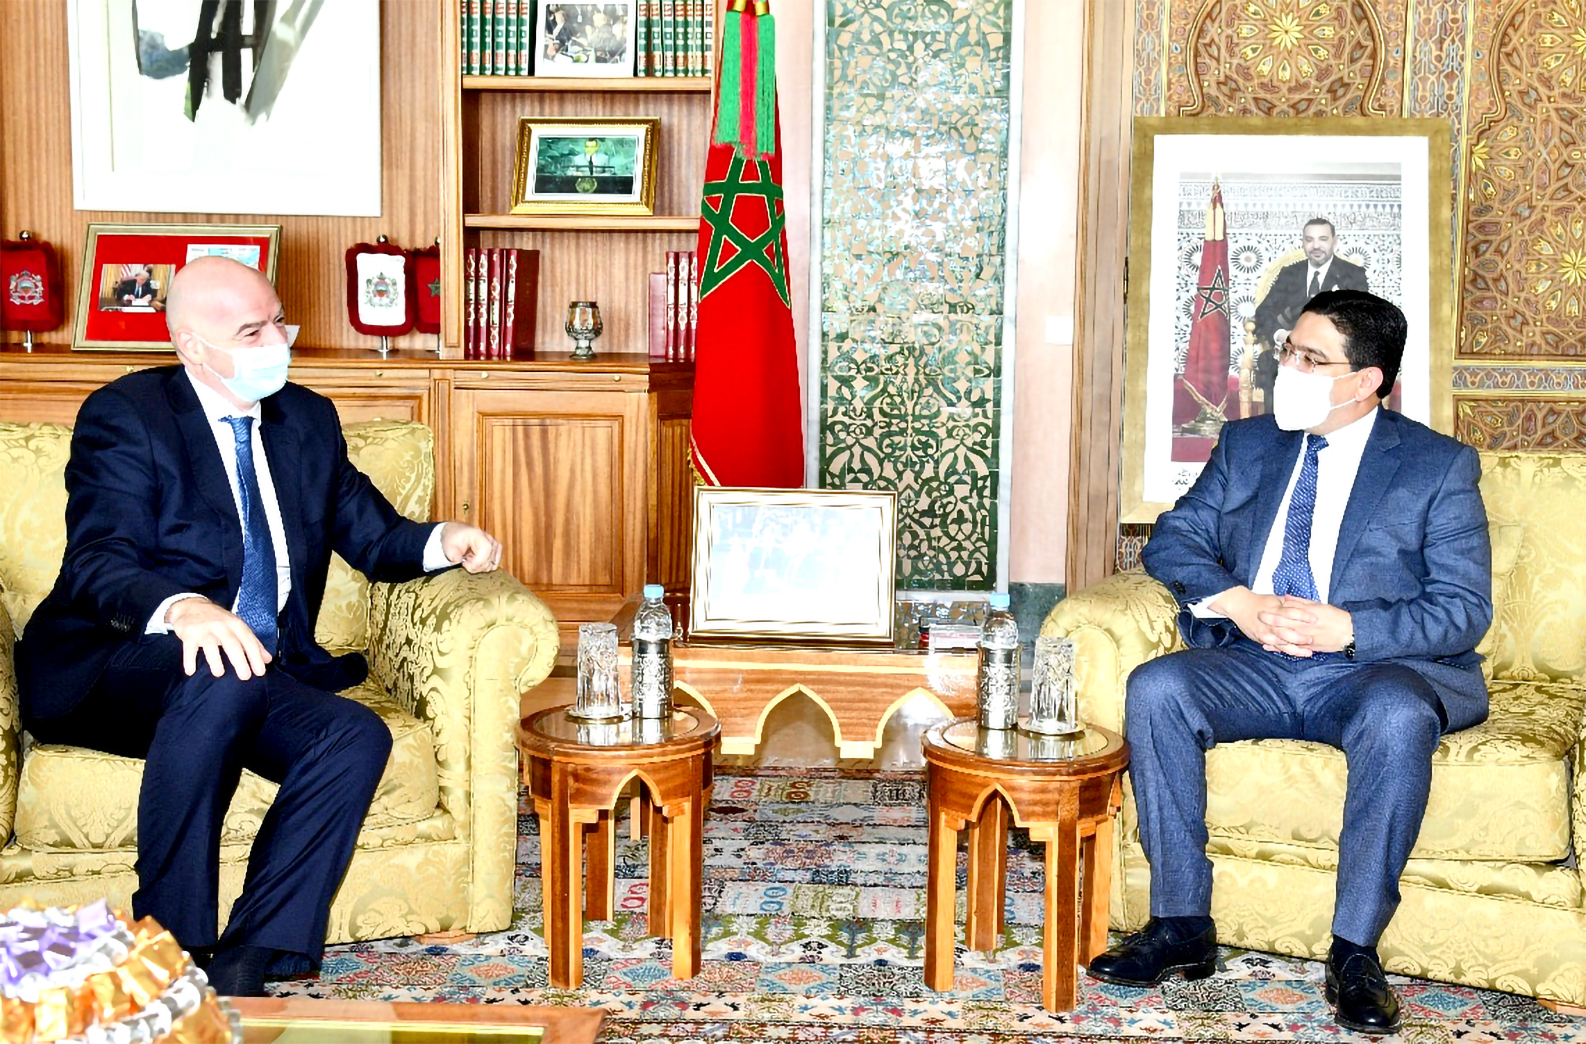 FIFA President Thanks HM King Mohammed VI for Supporting Football Development